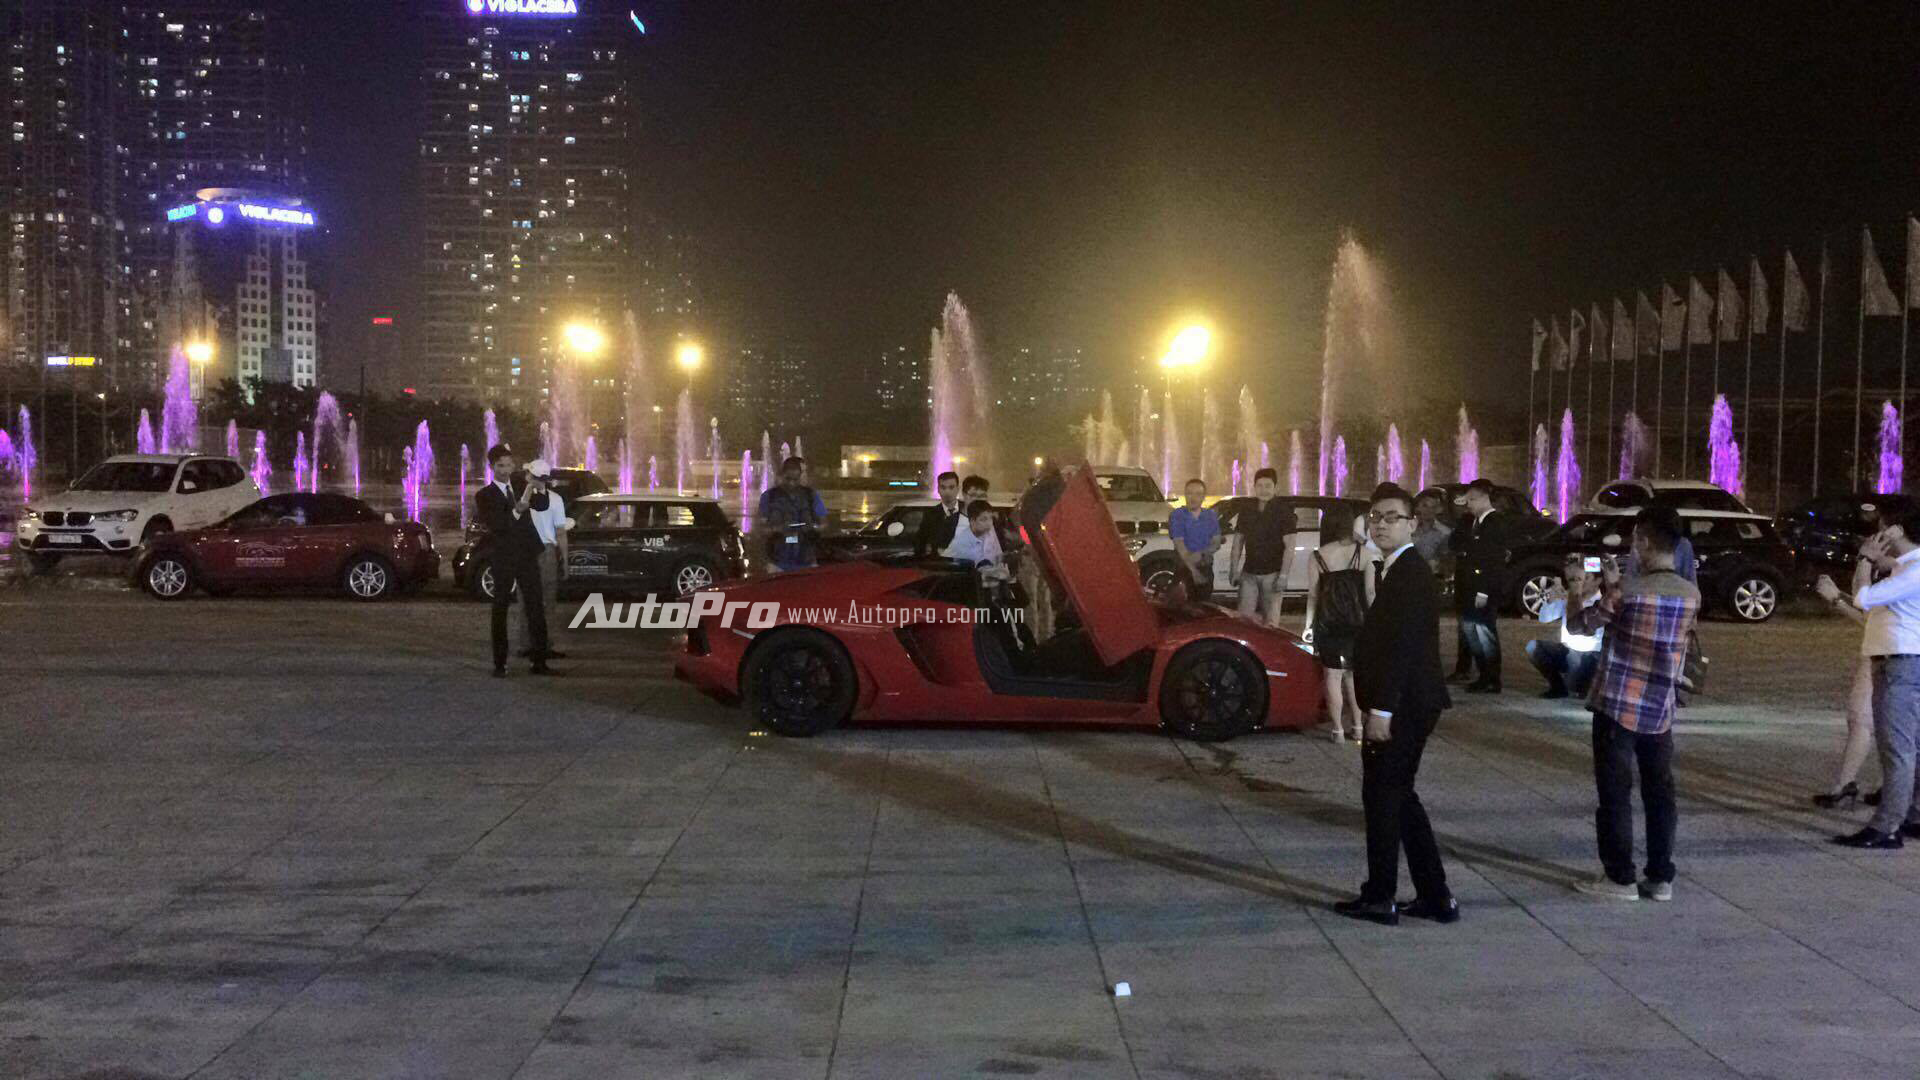 
Siêu xe Aventador LP700-4 Roadster xuất hiện tại sự kiện BMW World Vietnam 2016 vào tối qua.
